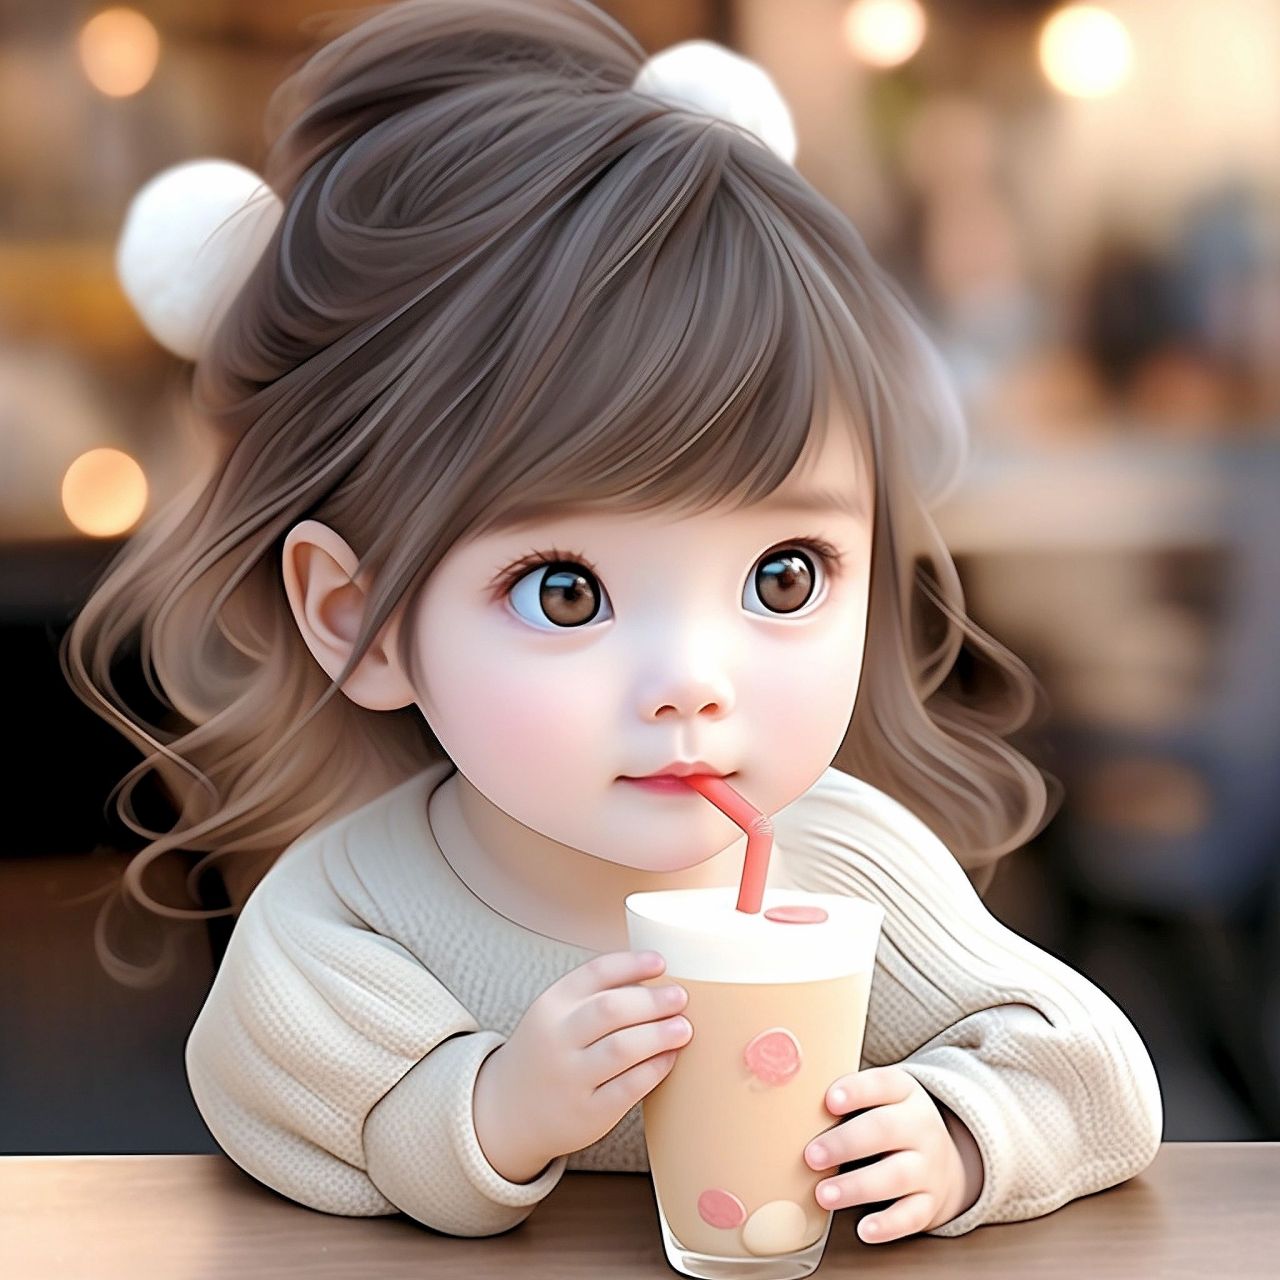 女孩头像:如果说喝水都会长胖的话,为什么不喝奶茶呢?